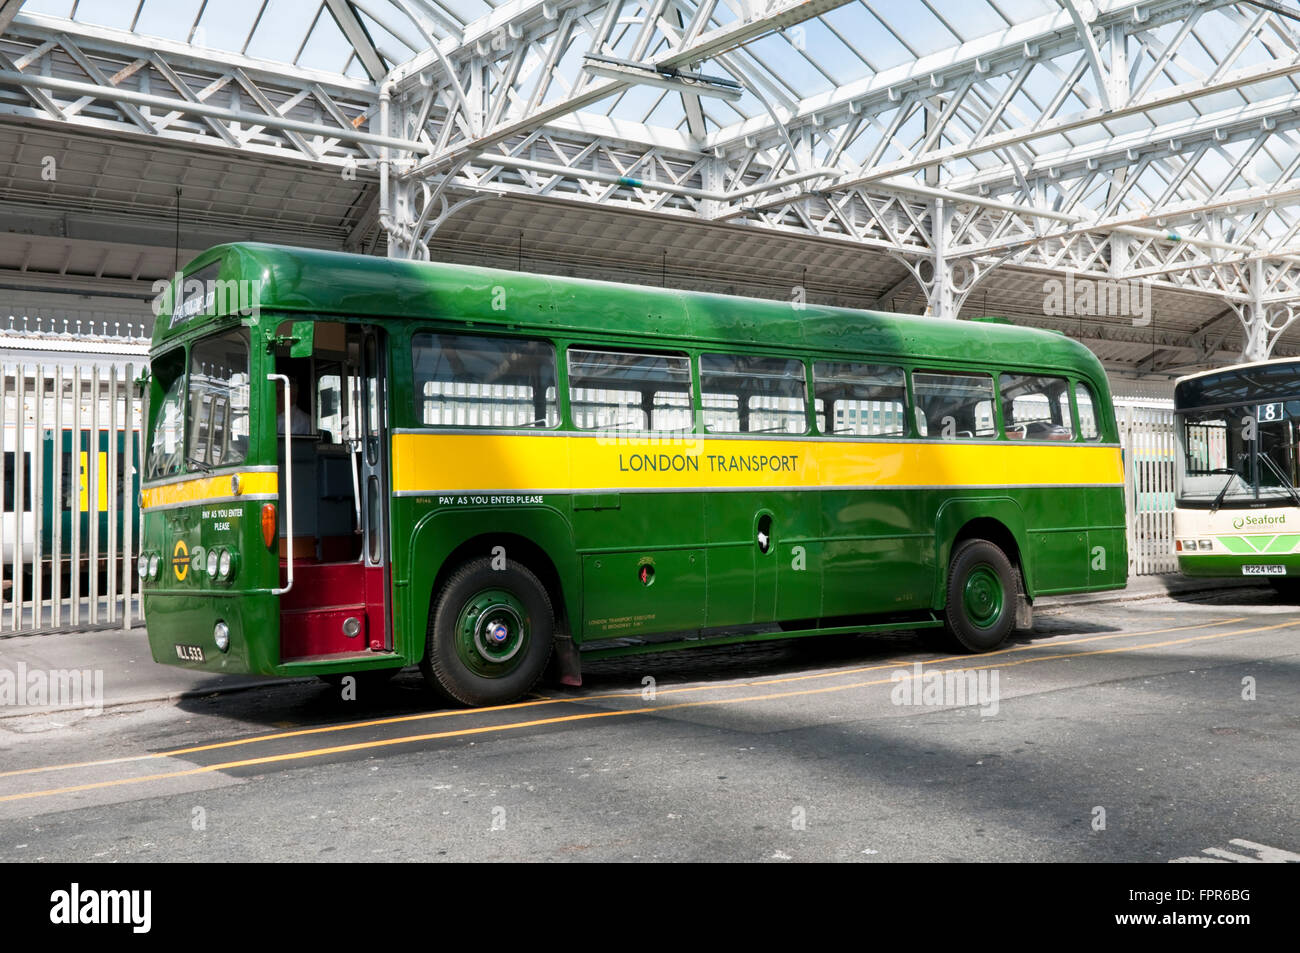 Una vendemmia verde e giallo RF AEC Londra Trasporto single decker bus ad un rally in Eastbourne, East Sussex Foto Stock